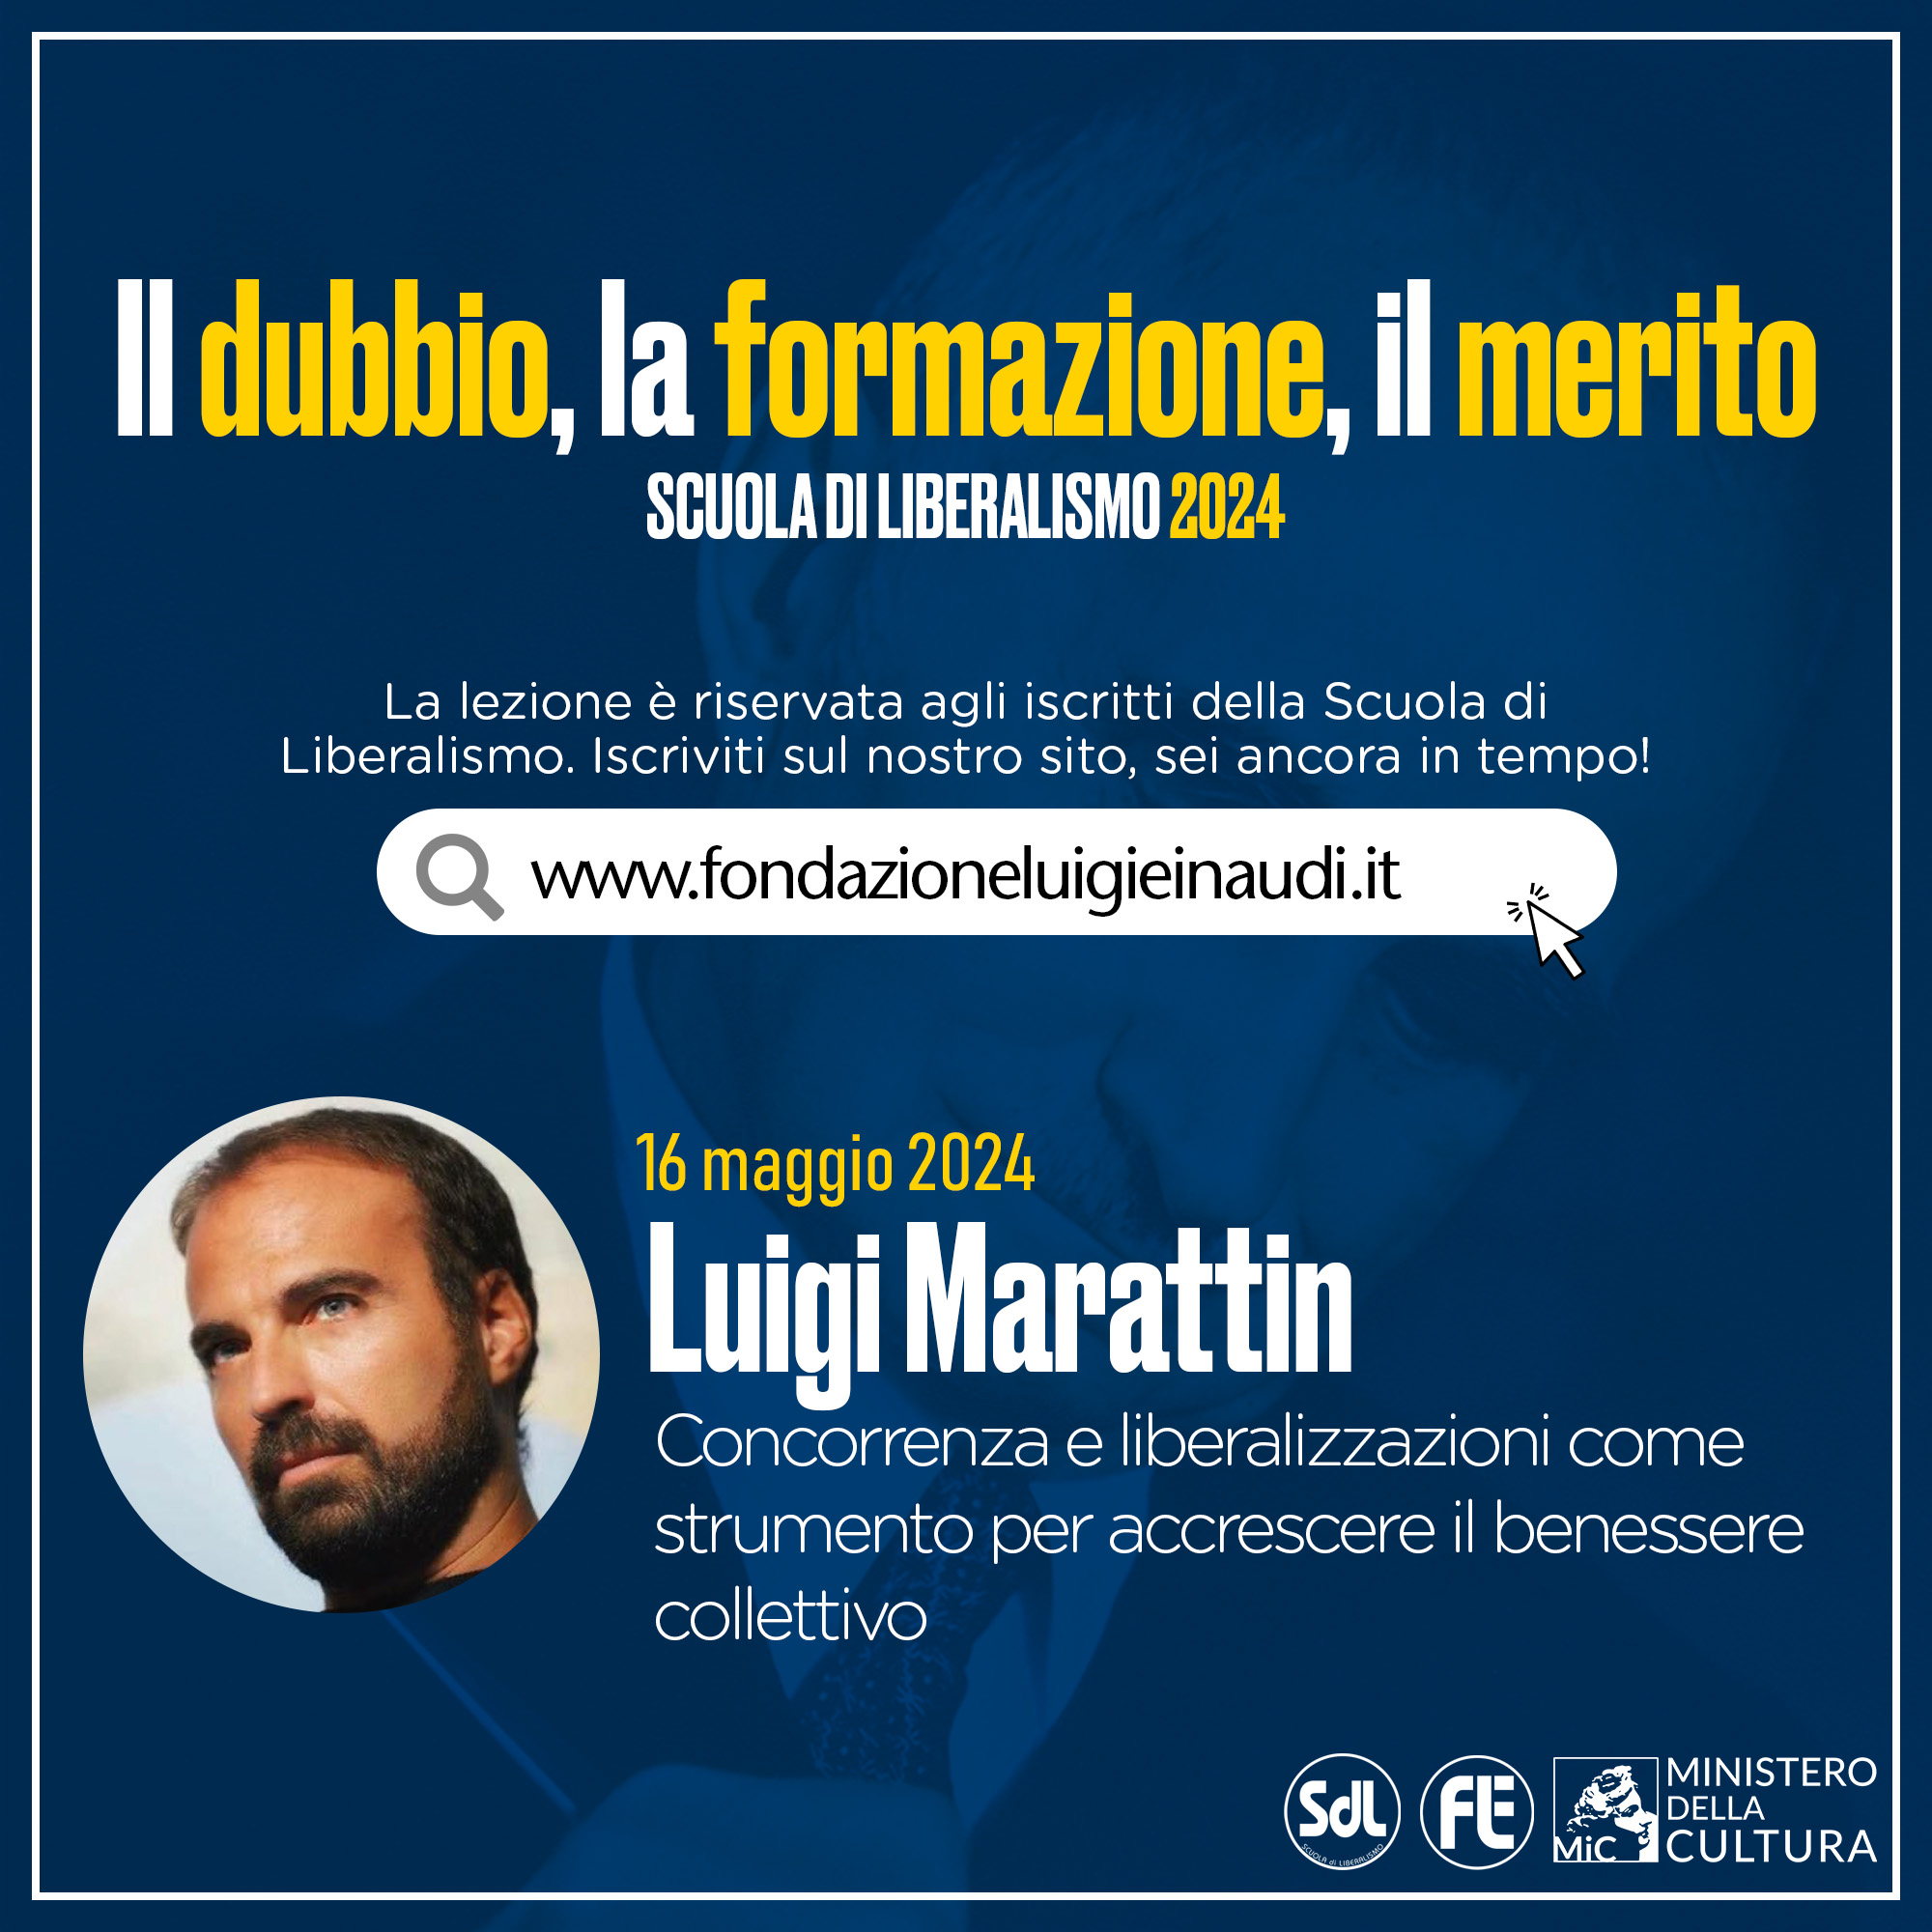 Scuola di Liberalismo 2024 – Luigi Marattin, Concorrenza e liberalizzazioni come strumento per accrescere il benessere collettivo